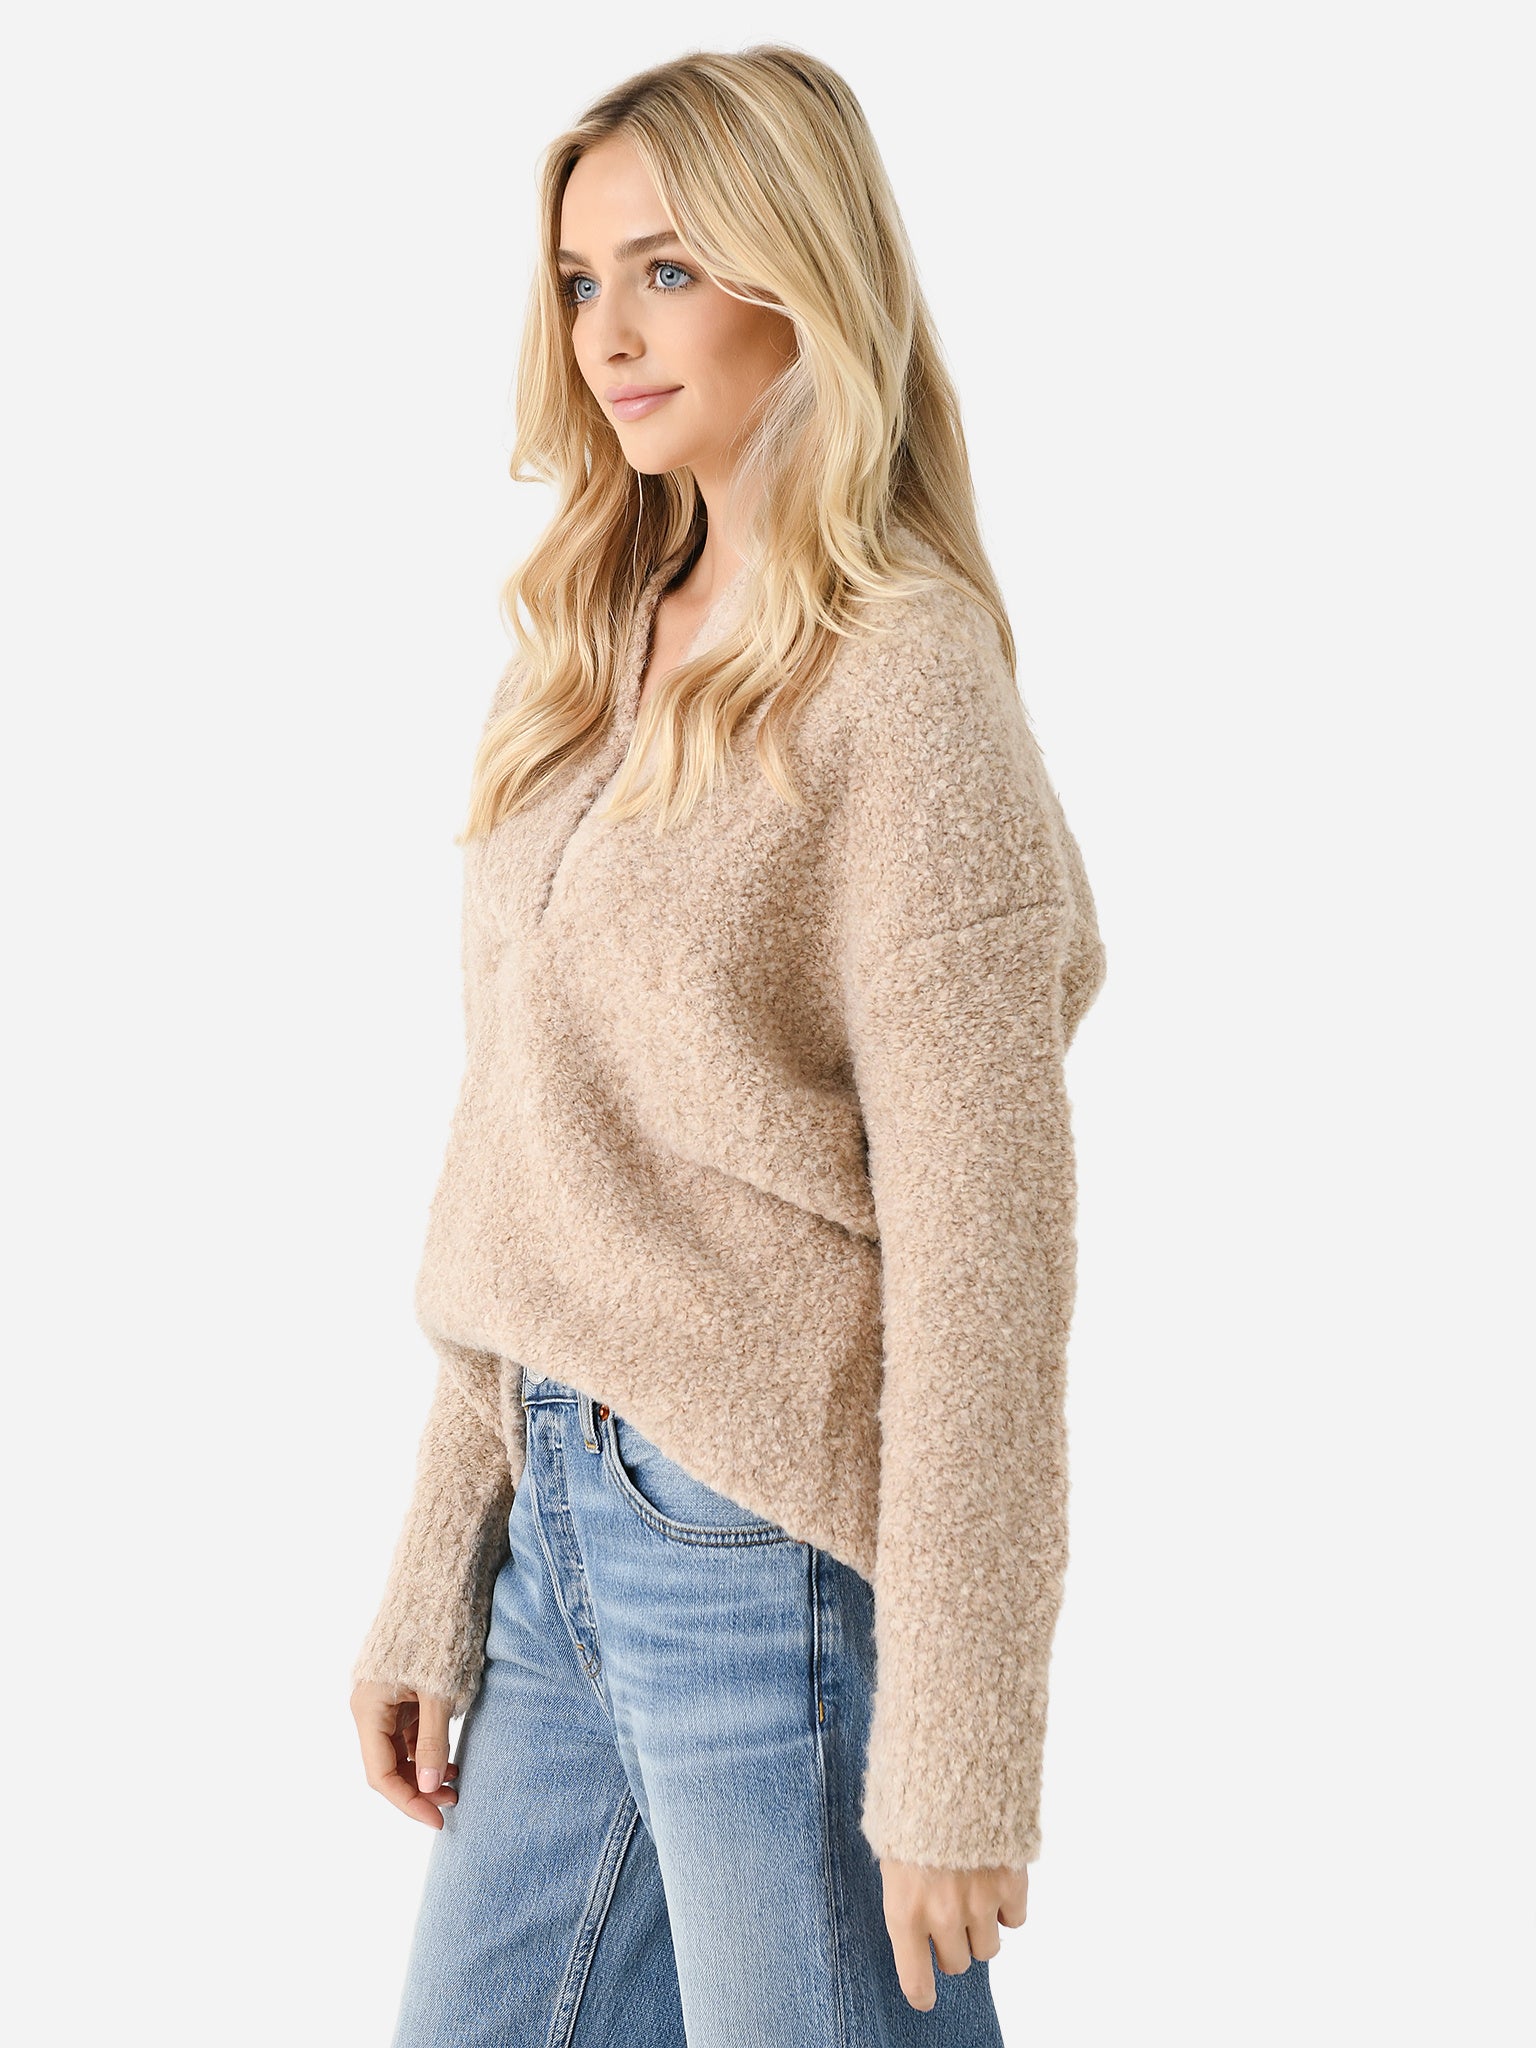 最新作人気SALEVince camel sweater キャメル ウール セーター ヴィンス トップス